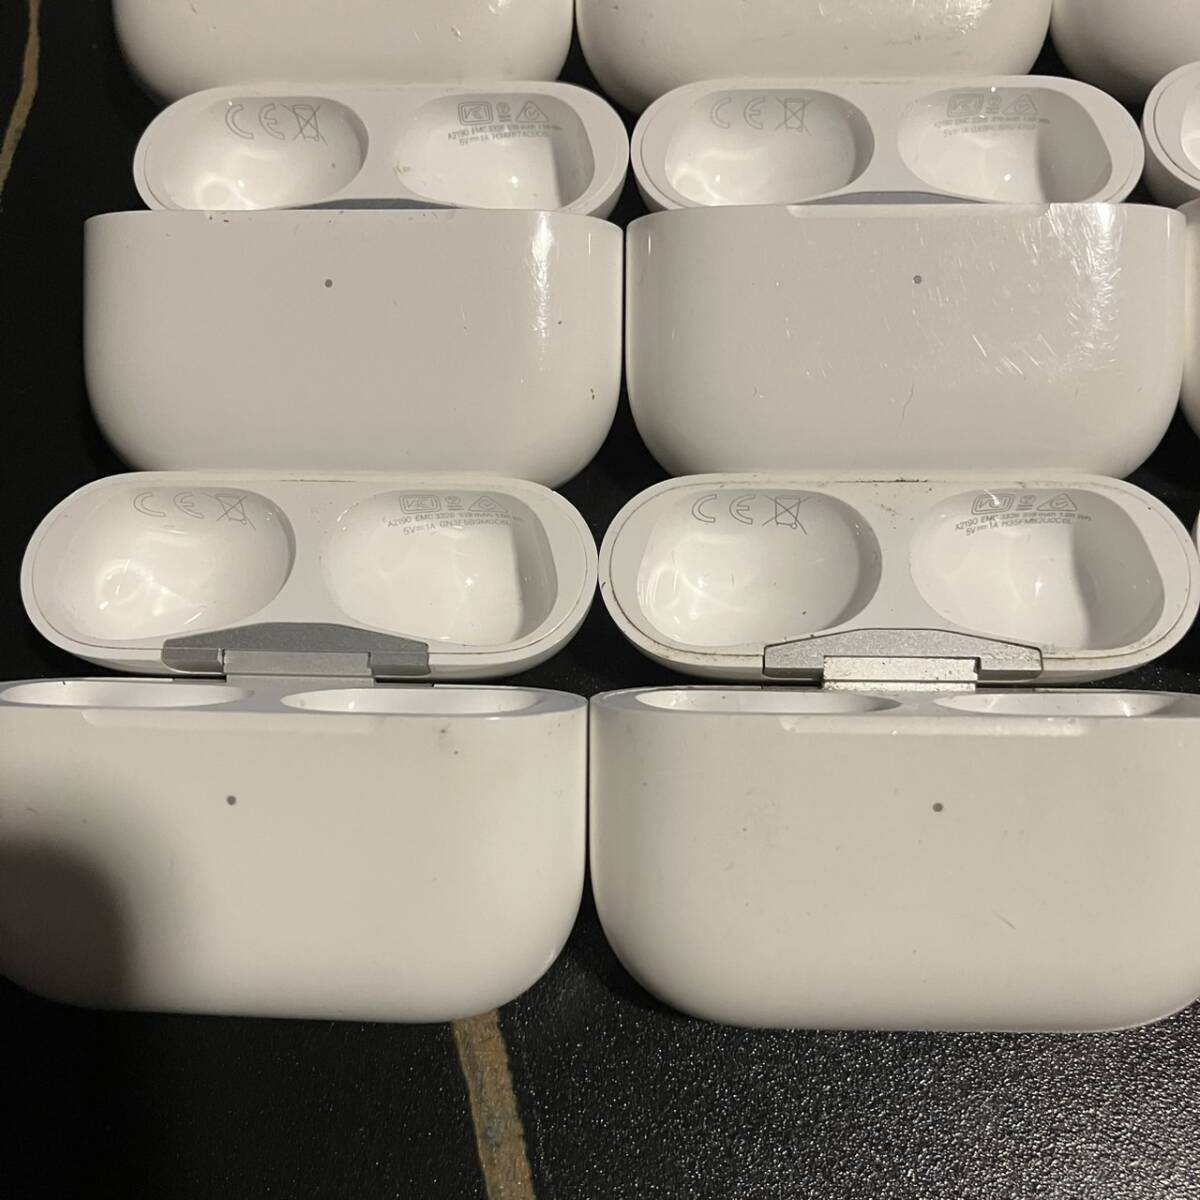 Apple AirPods Pro A2190 アップル エアポッズプロ 充電ケースのみ まとめて 32個セット イヤホンケース 32-3 _画像3